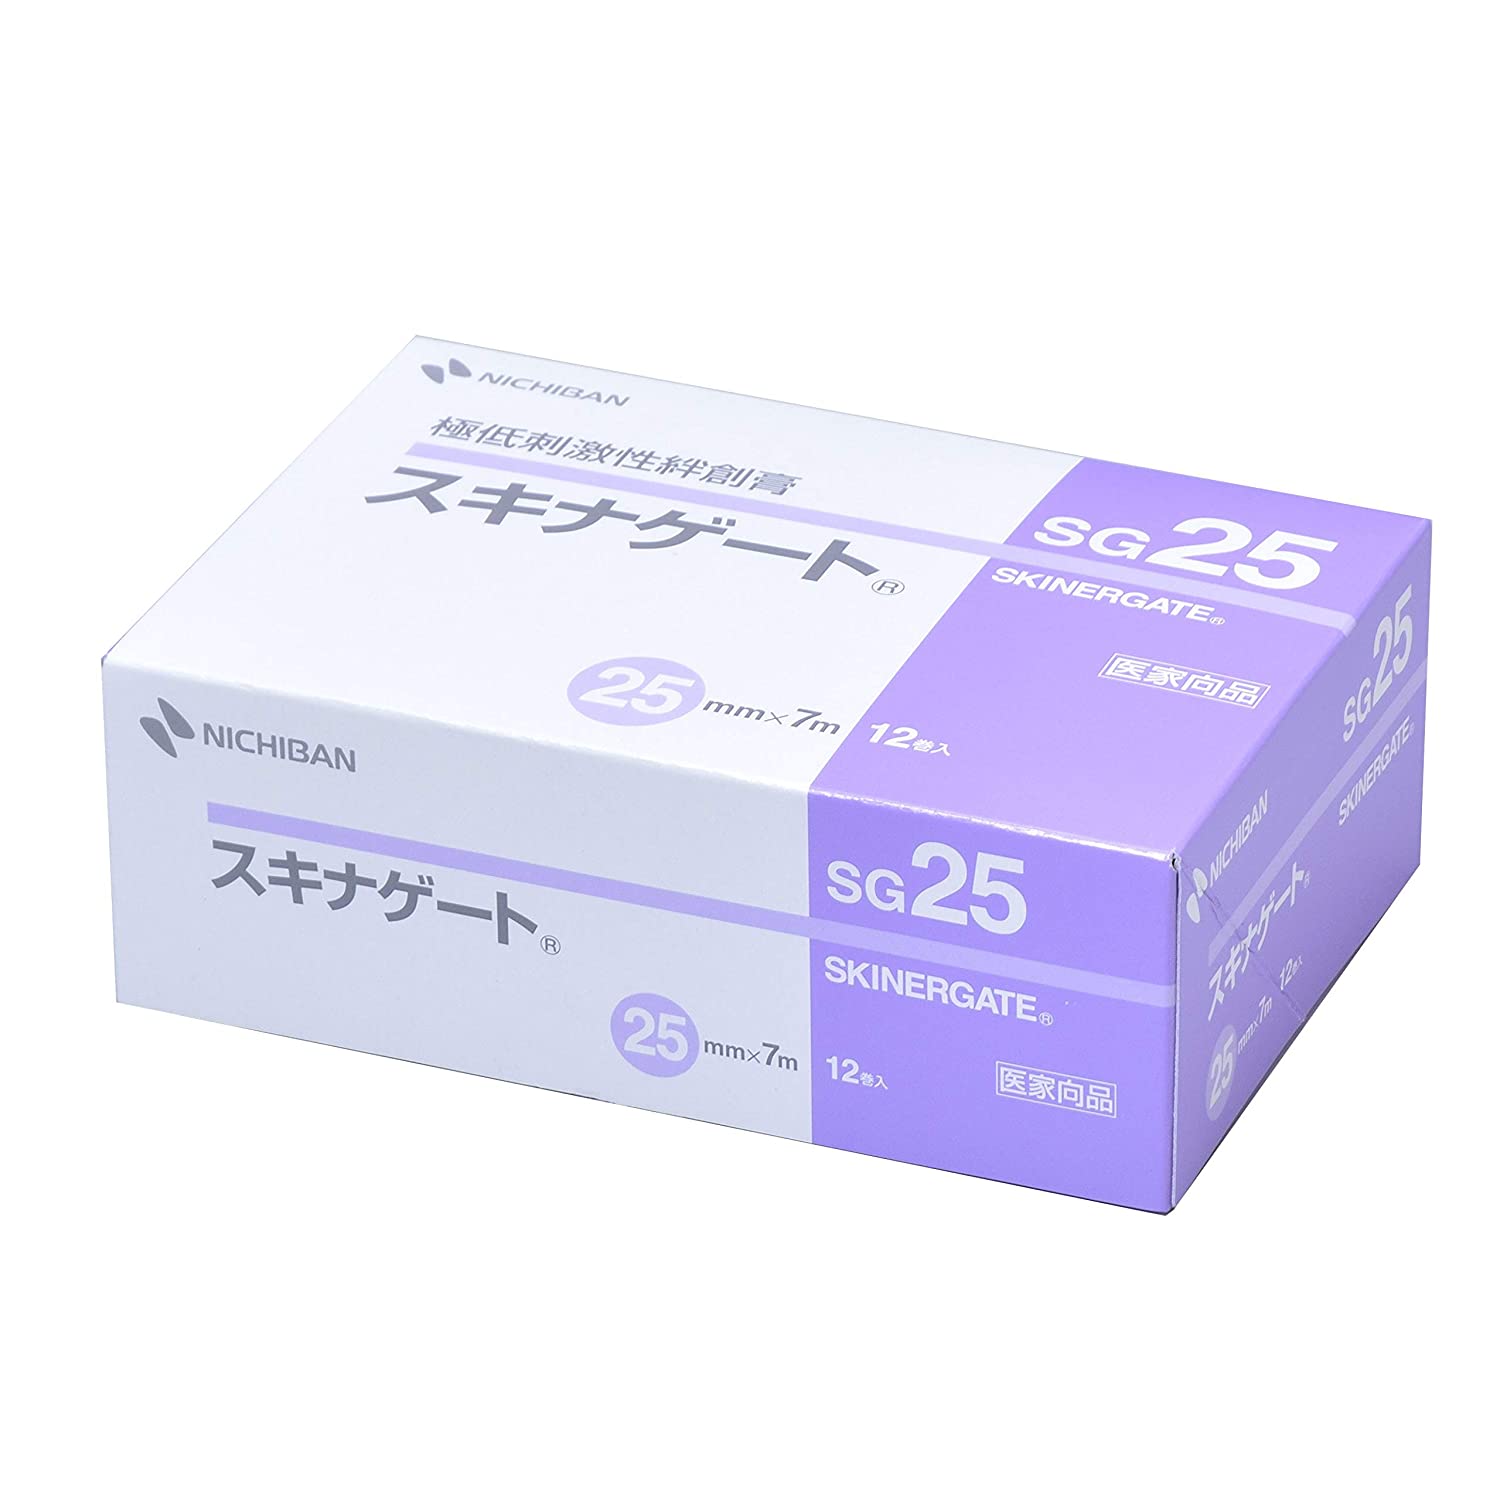 ニチバン スキナゲート SG25 (25mm×7m) 12巻入 NICHIBAN 医療用テープ 極低刺激性絆創膏 固定 極低刺激テープ フィルムタイプ 肌にやさしい ばんそうこう